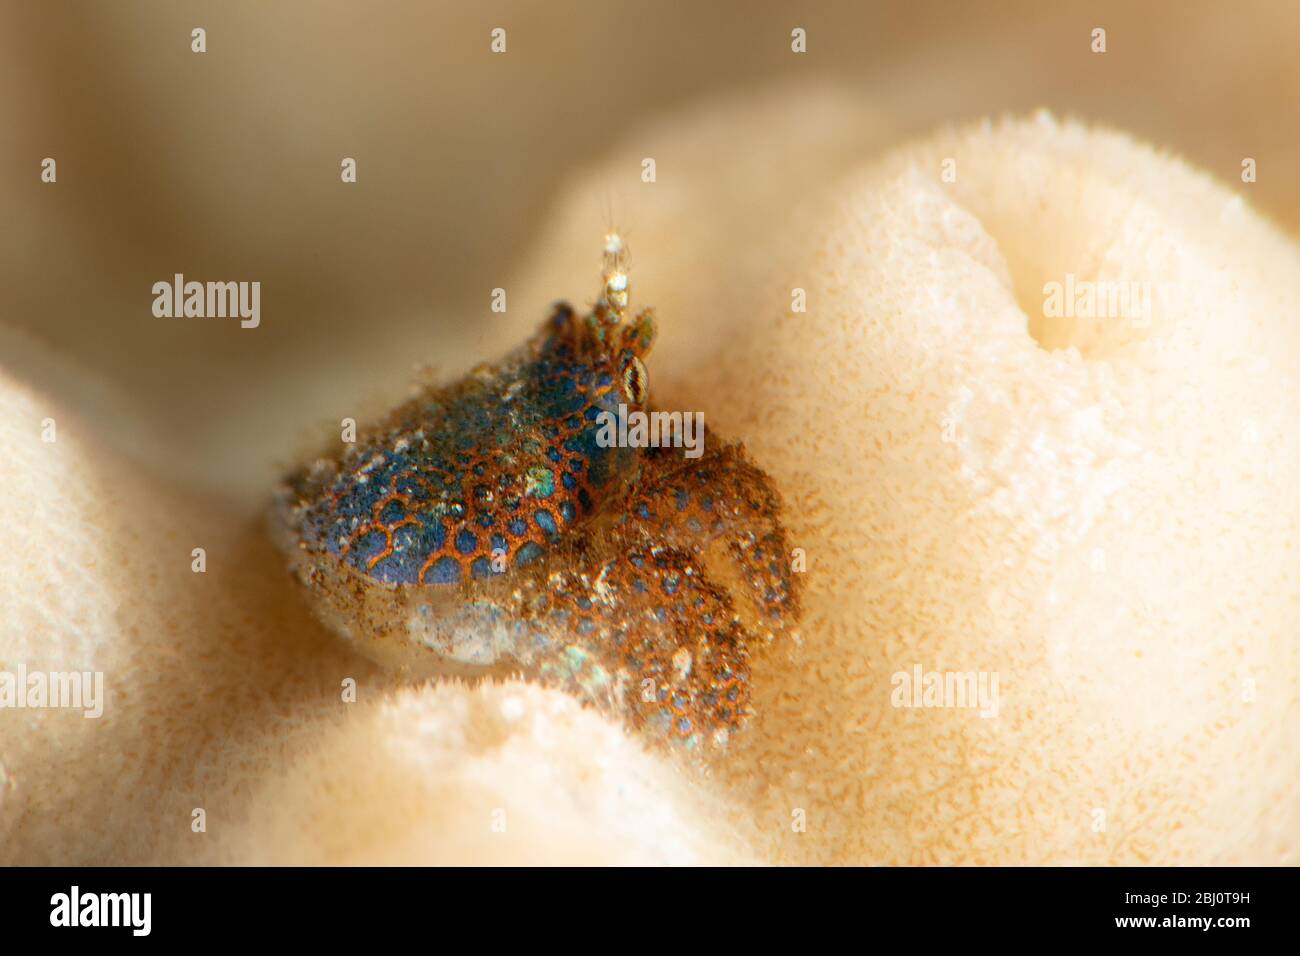 Korallenbauch (Pseudocryptochirus viridis). Unterwassermakro-Fotografie aus Romblon, Philippinen Stockfoto